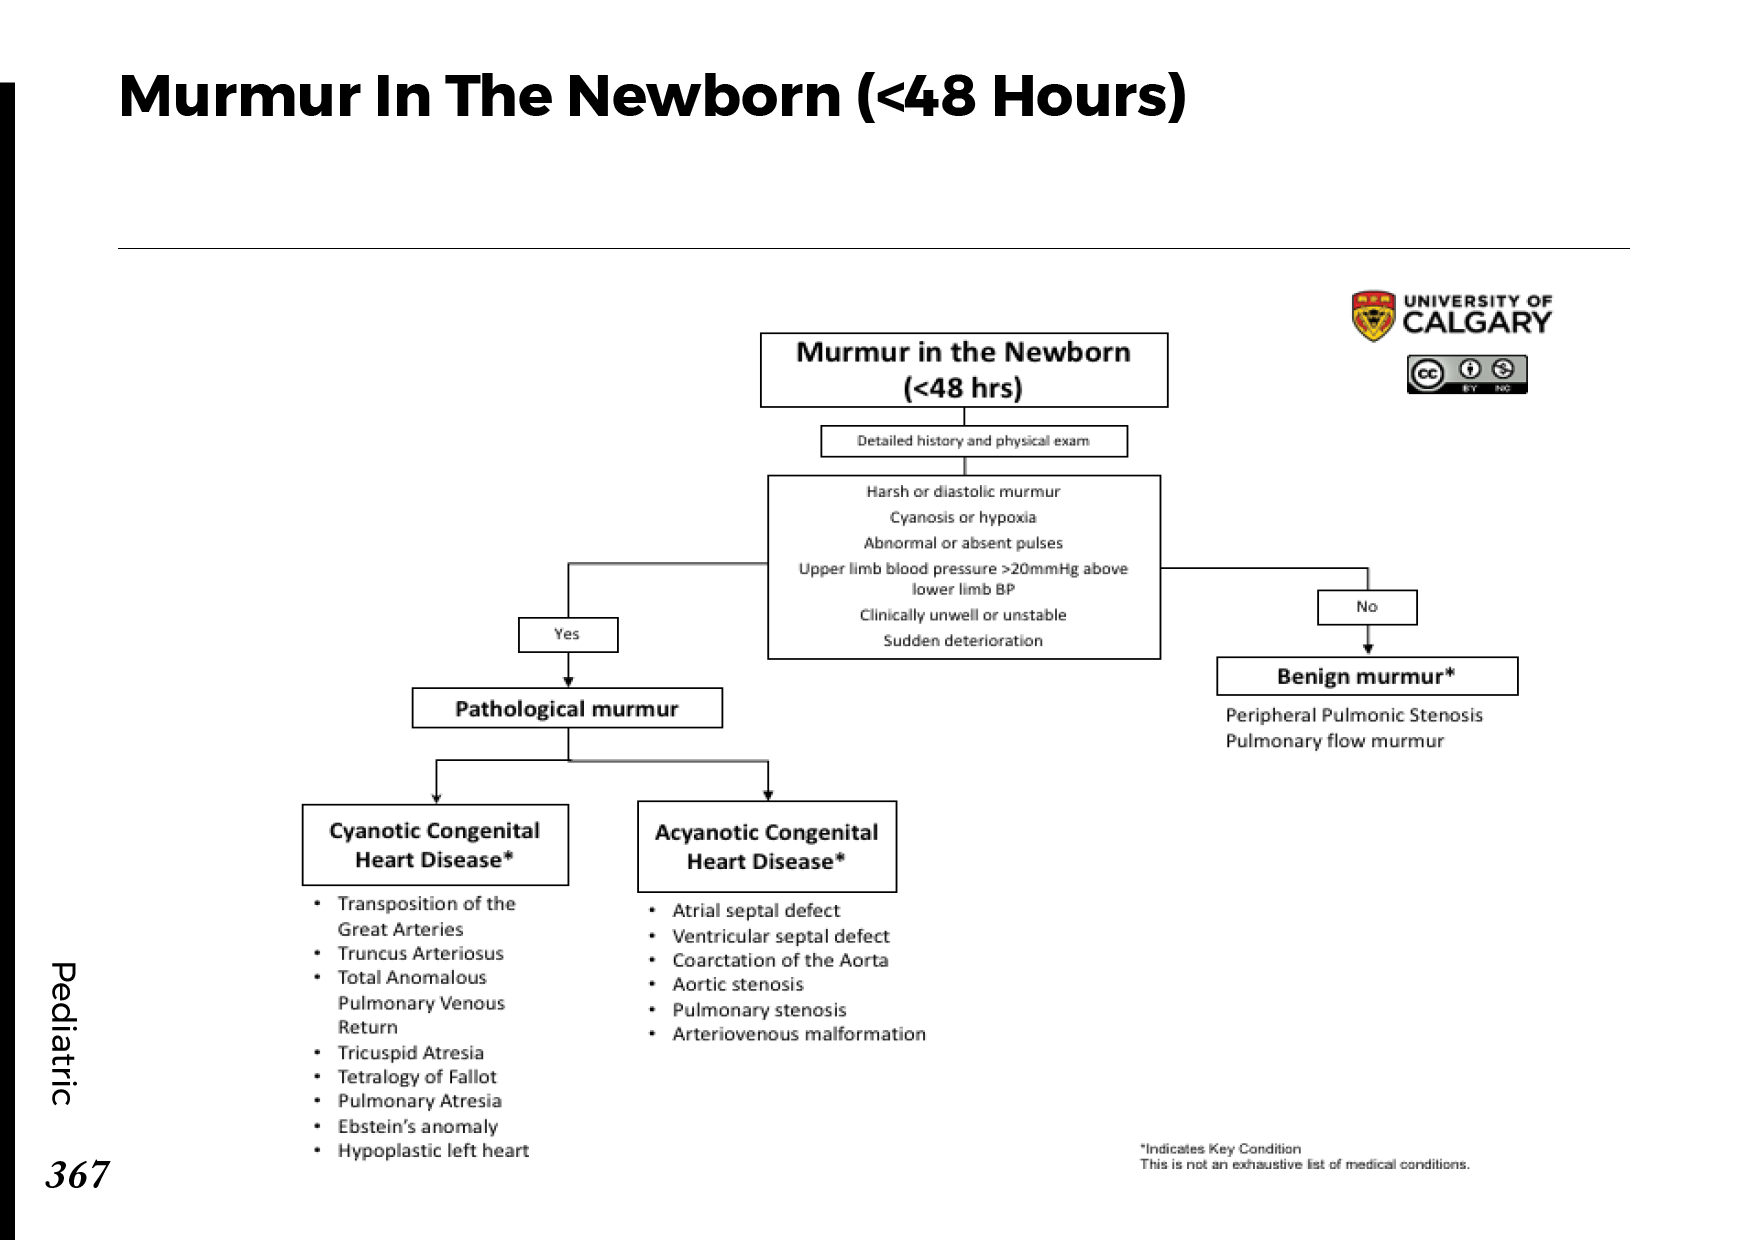 MURMUR IN THE NEWBORN (<48 HOURS) Scheme